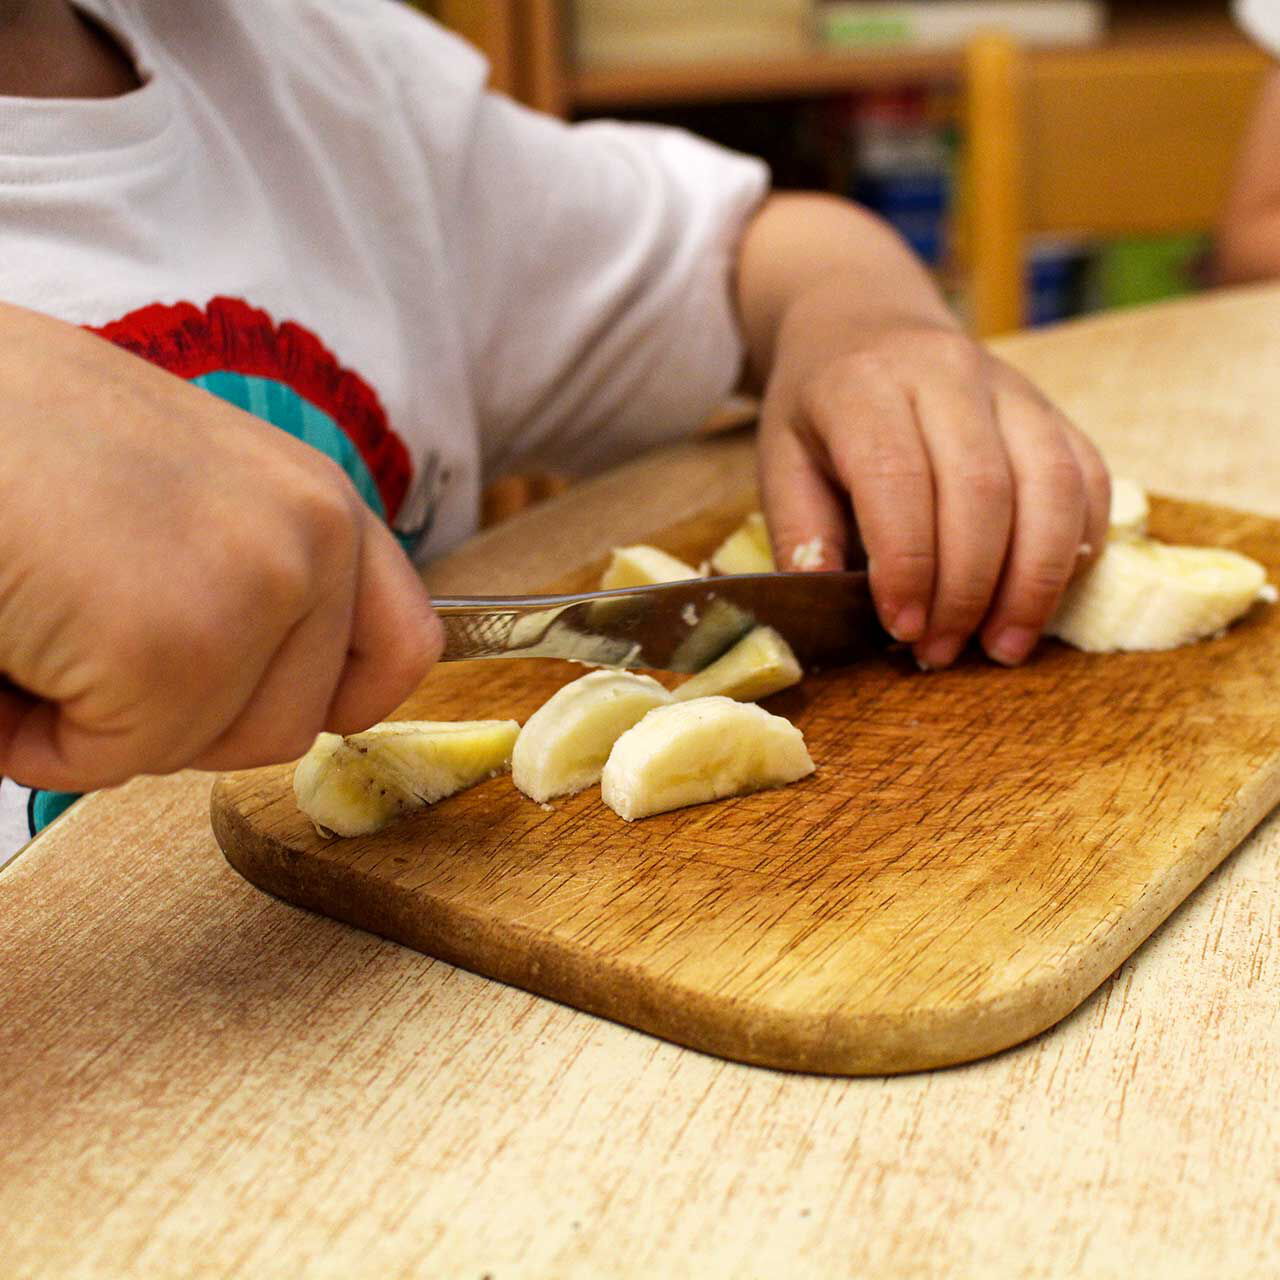 Ein Kleinkind schneidet mit einem Messer eine Banane in Stücke.